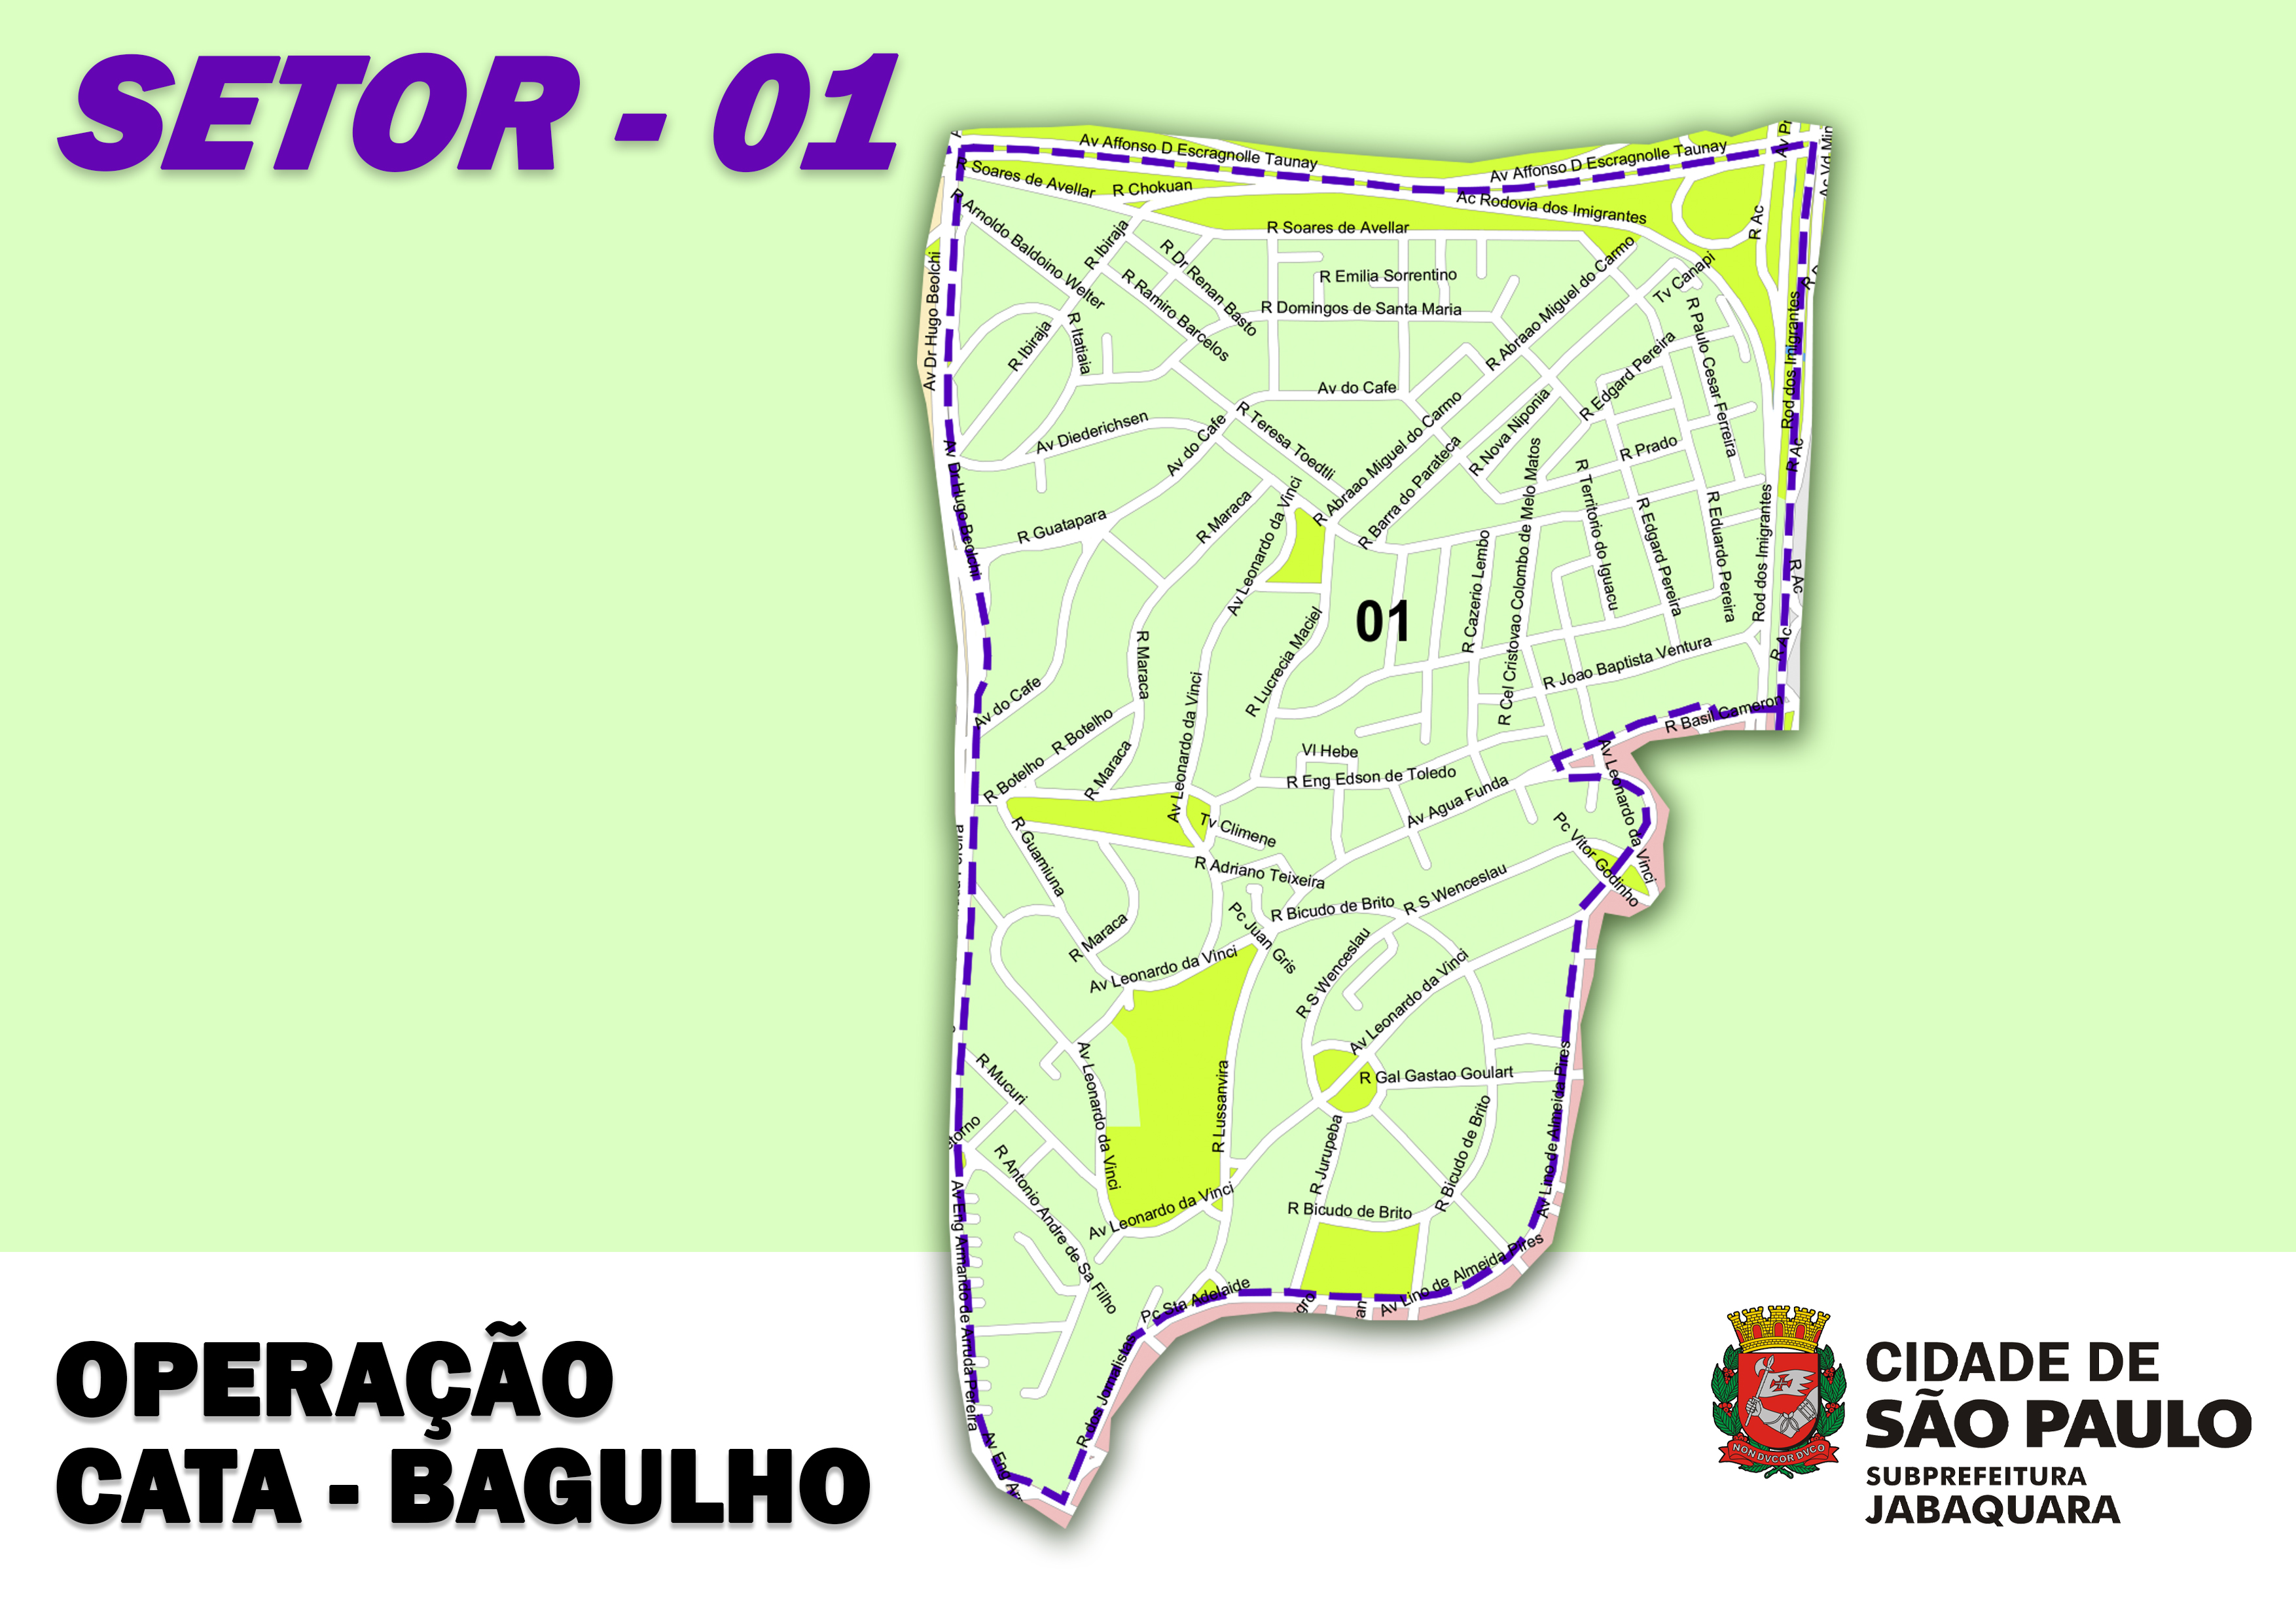 imagem com fundo verde e um mapa ao centro, com os dizeres "Operação Cata-bagulho" e o logotipo da prefeitura de São Paulo.